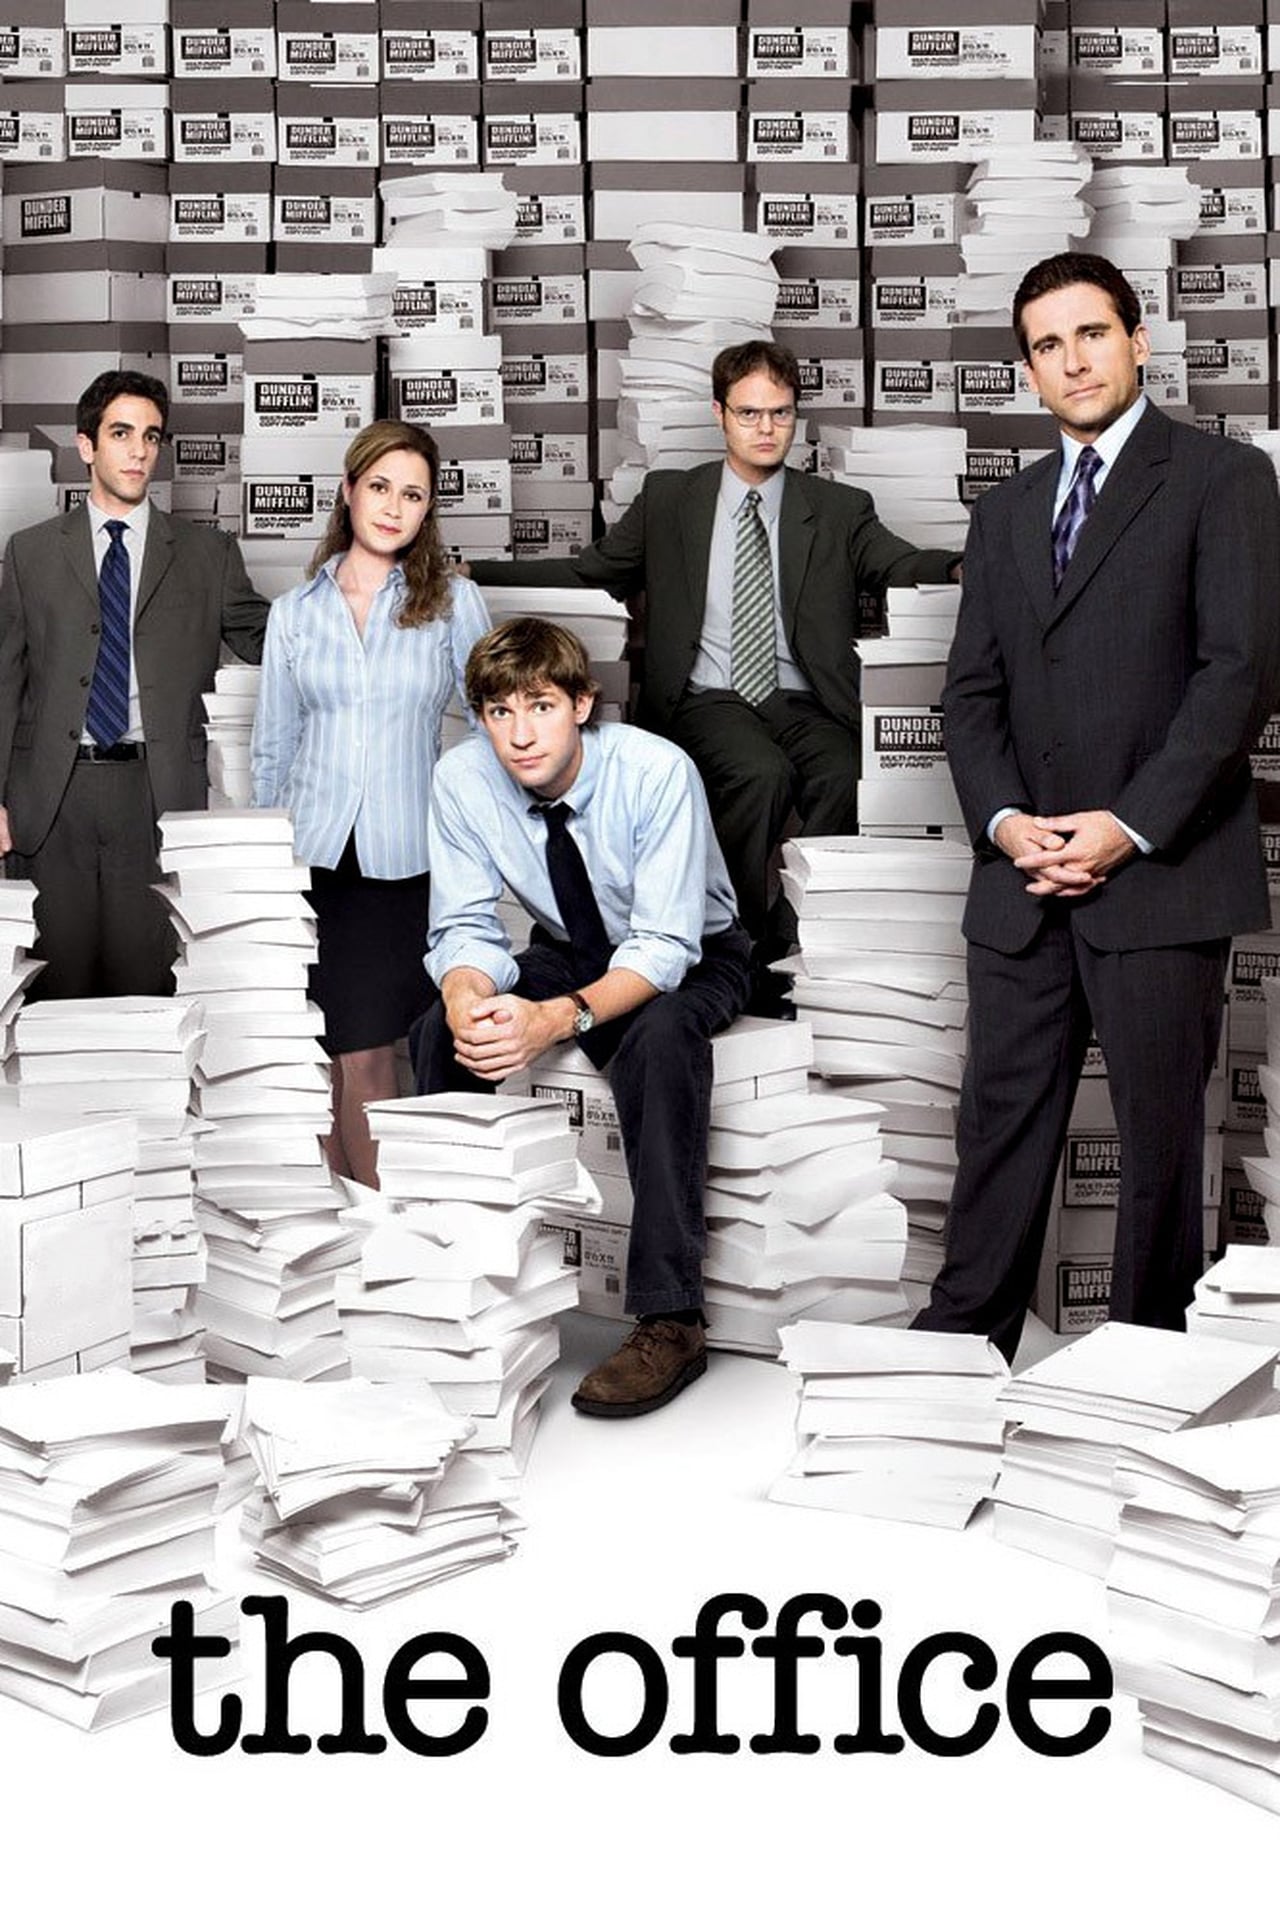 The Office (US) Season 5